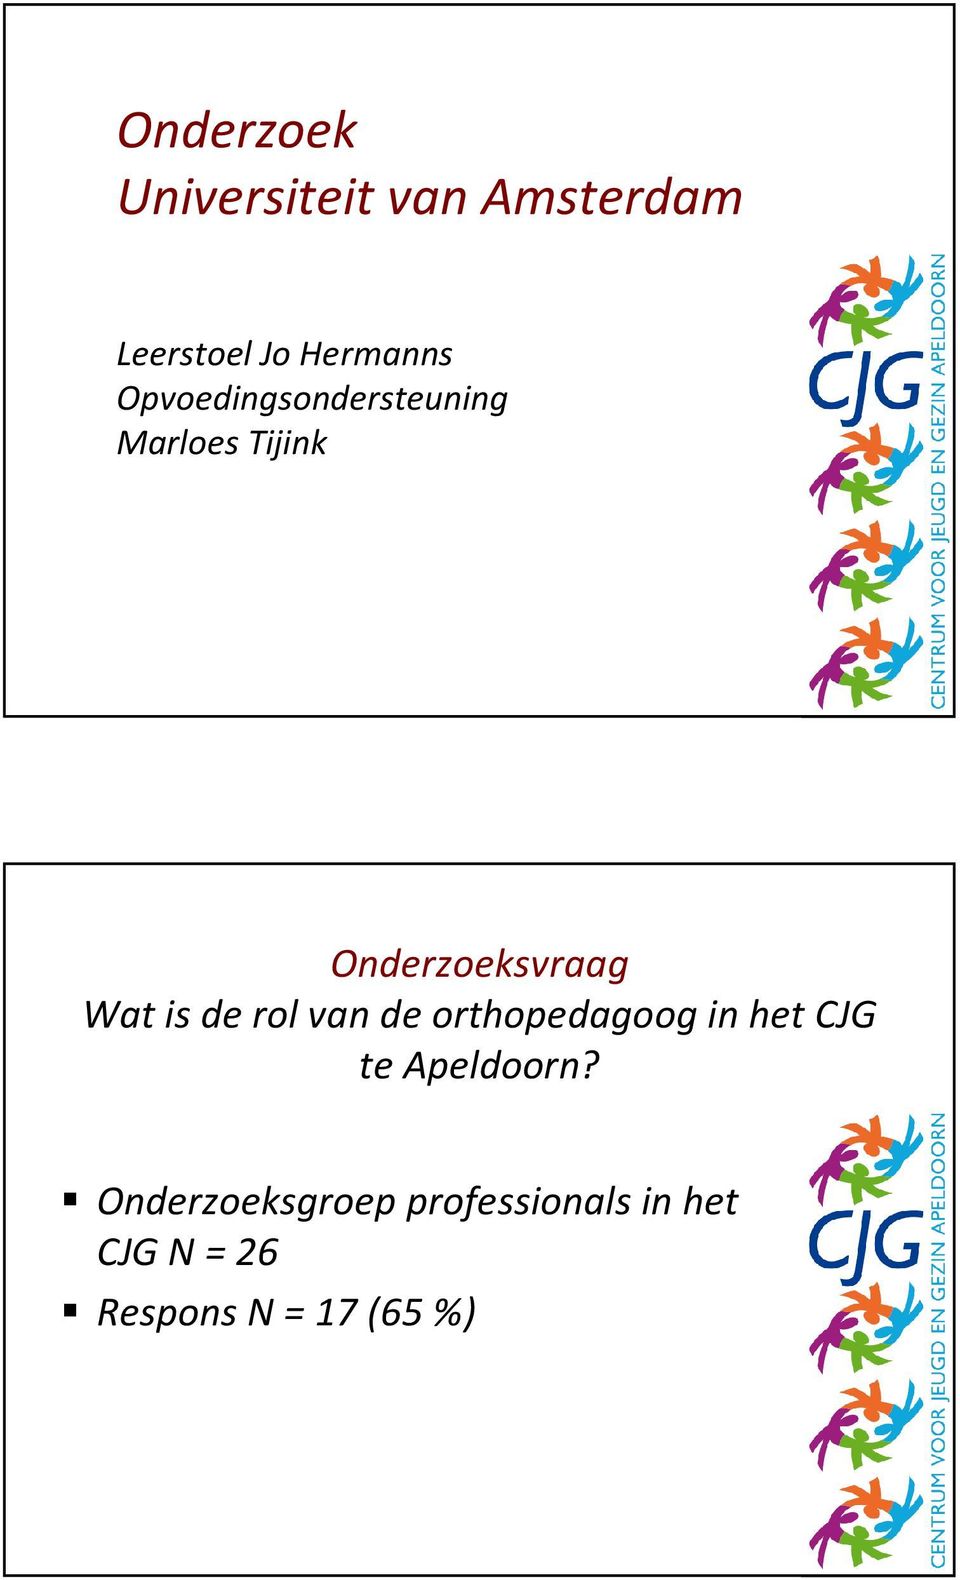 is de rol van de orthopedagoog in het CJG te Apeldoorn?